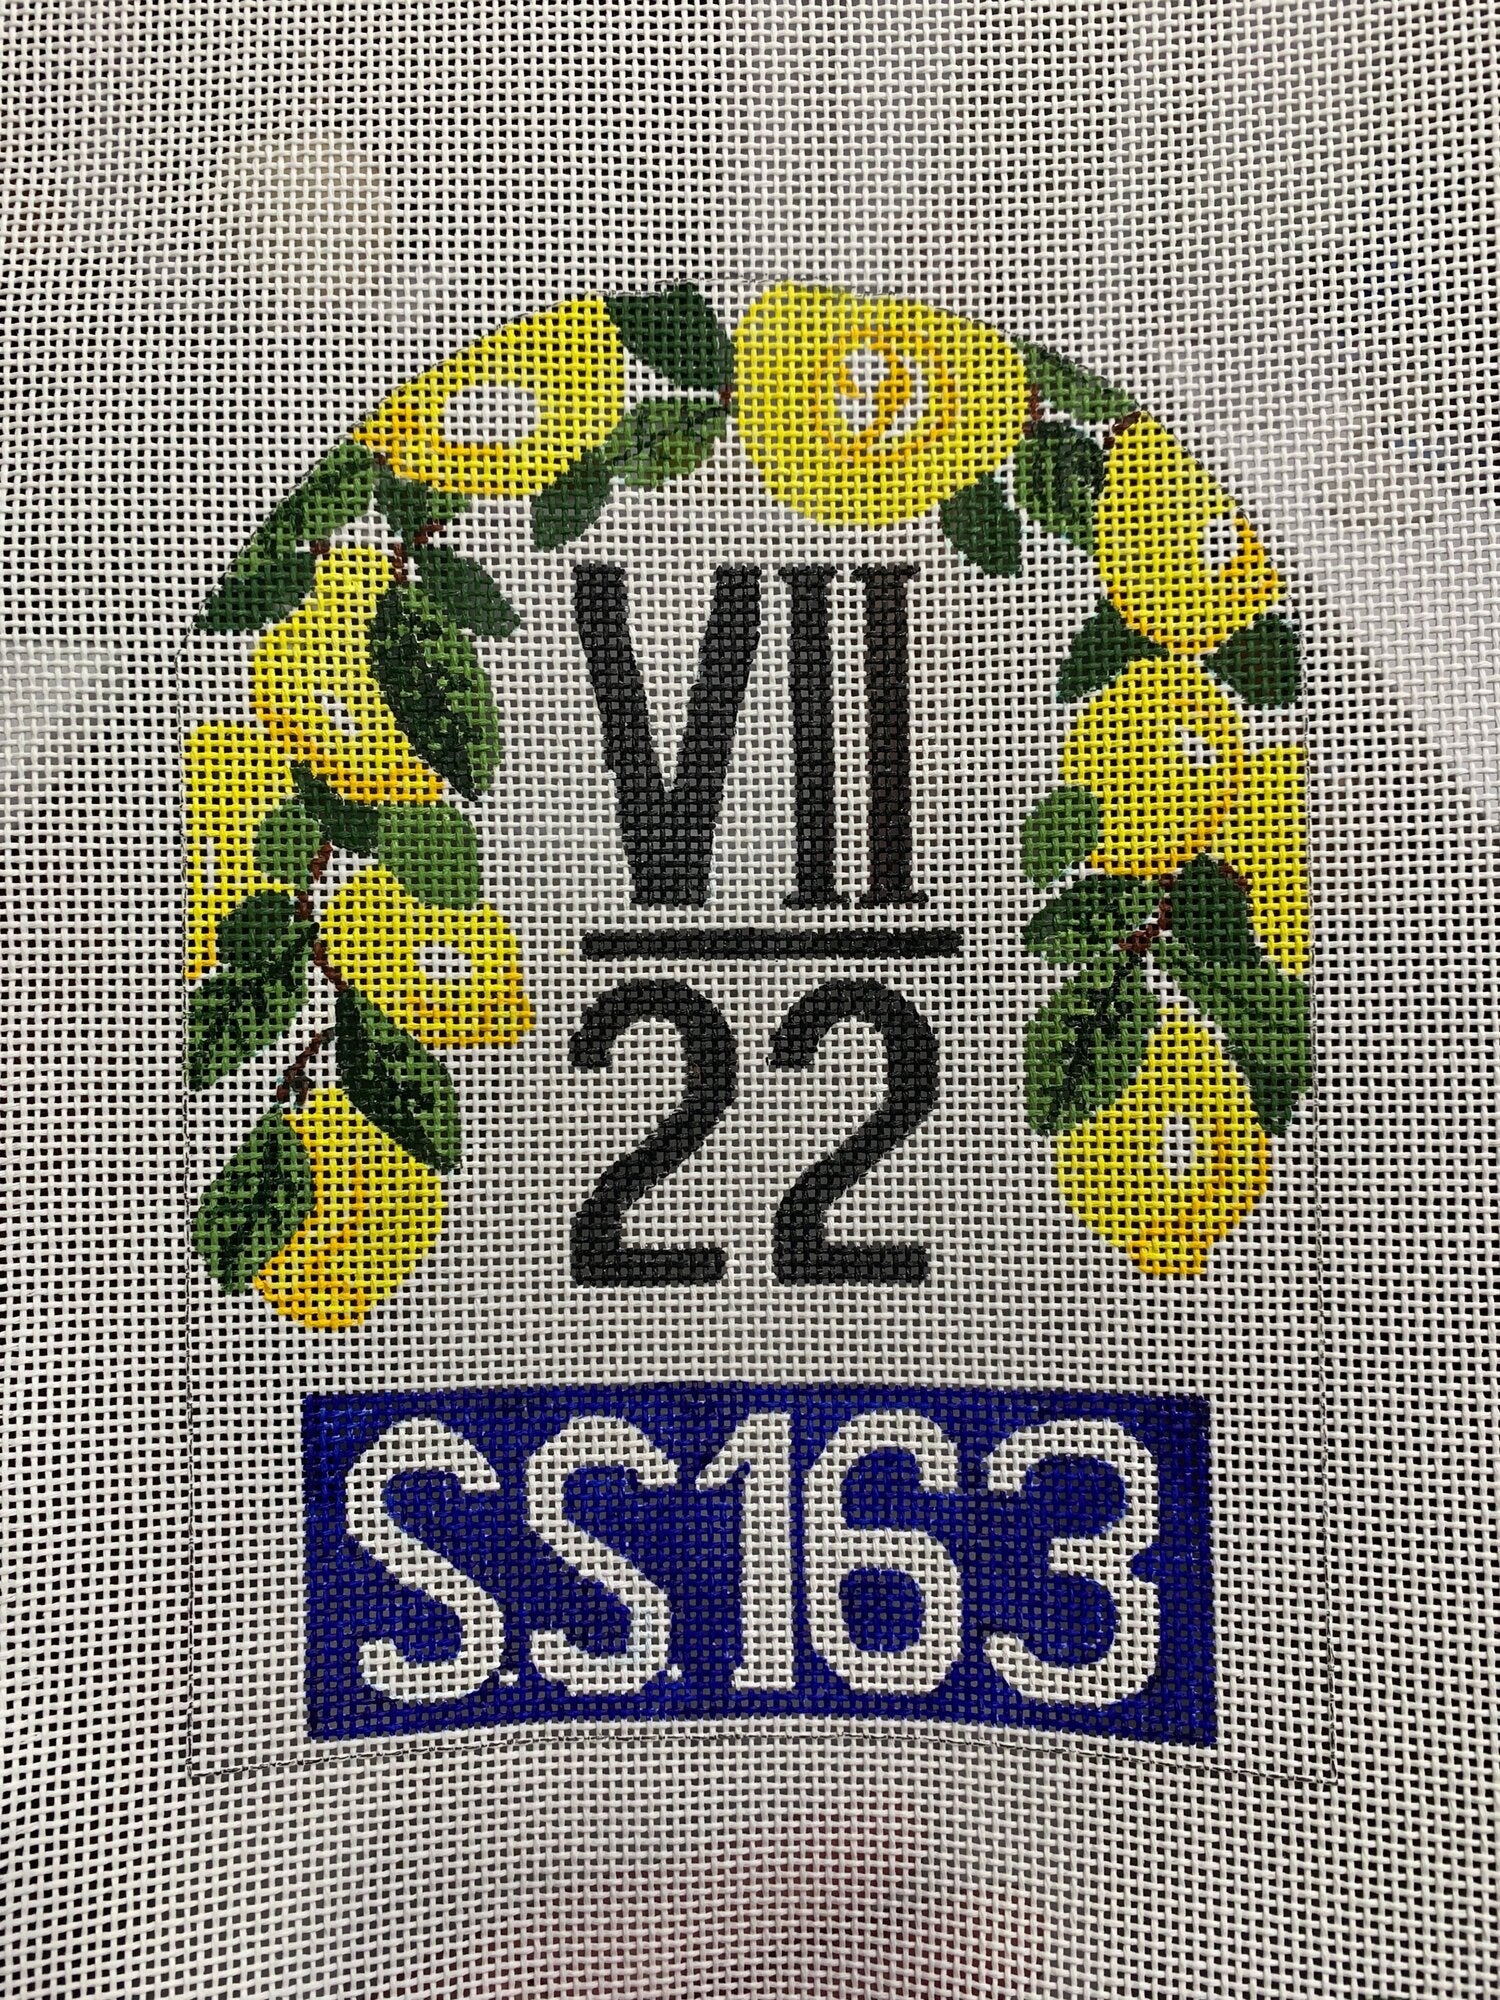 VCB 161 - Amalfi  Italy Tile Marker